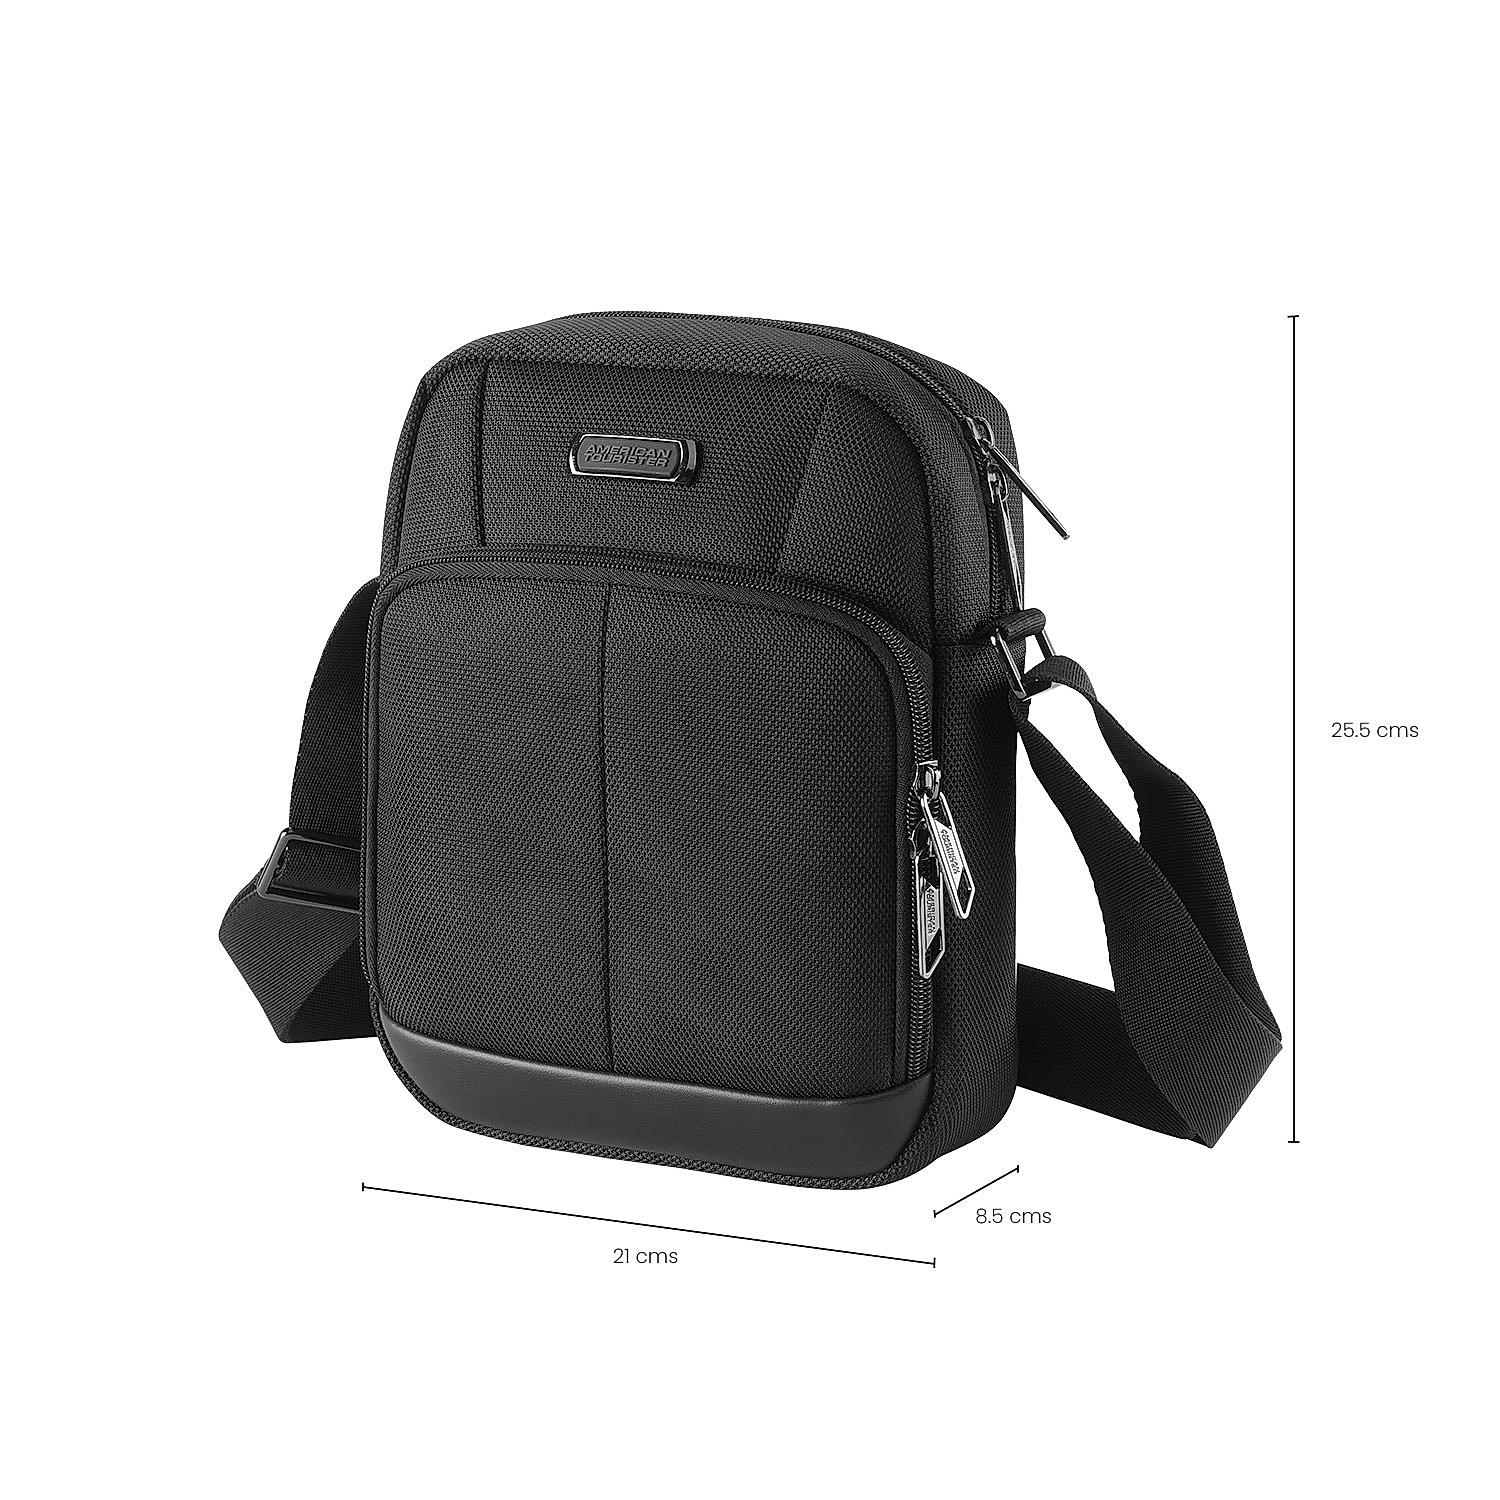 Buy Black Bass Shoulder Bag (21 cm) Online at American Tourister | 521101